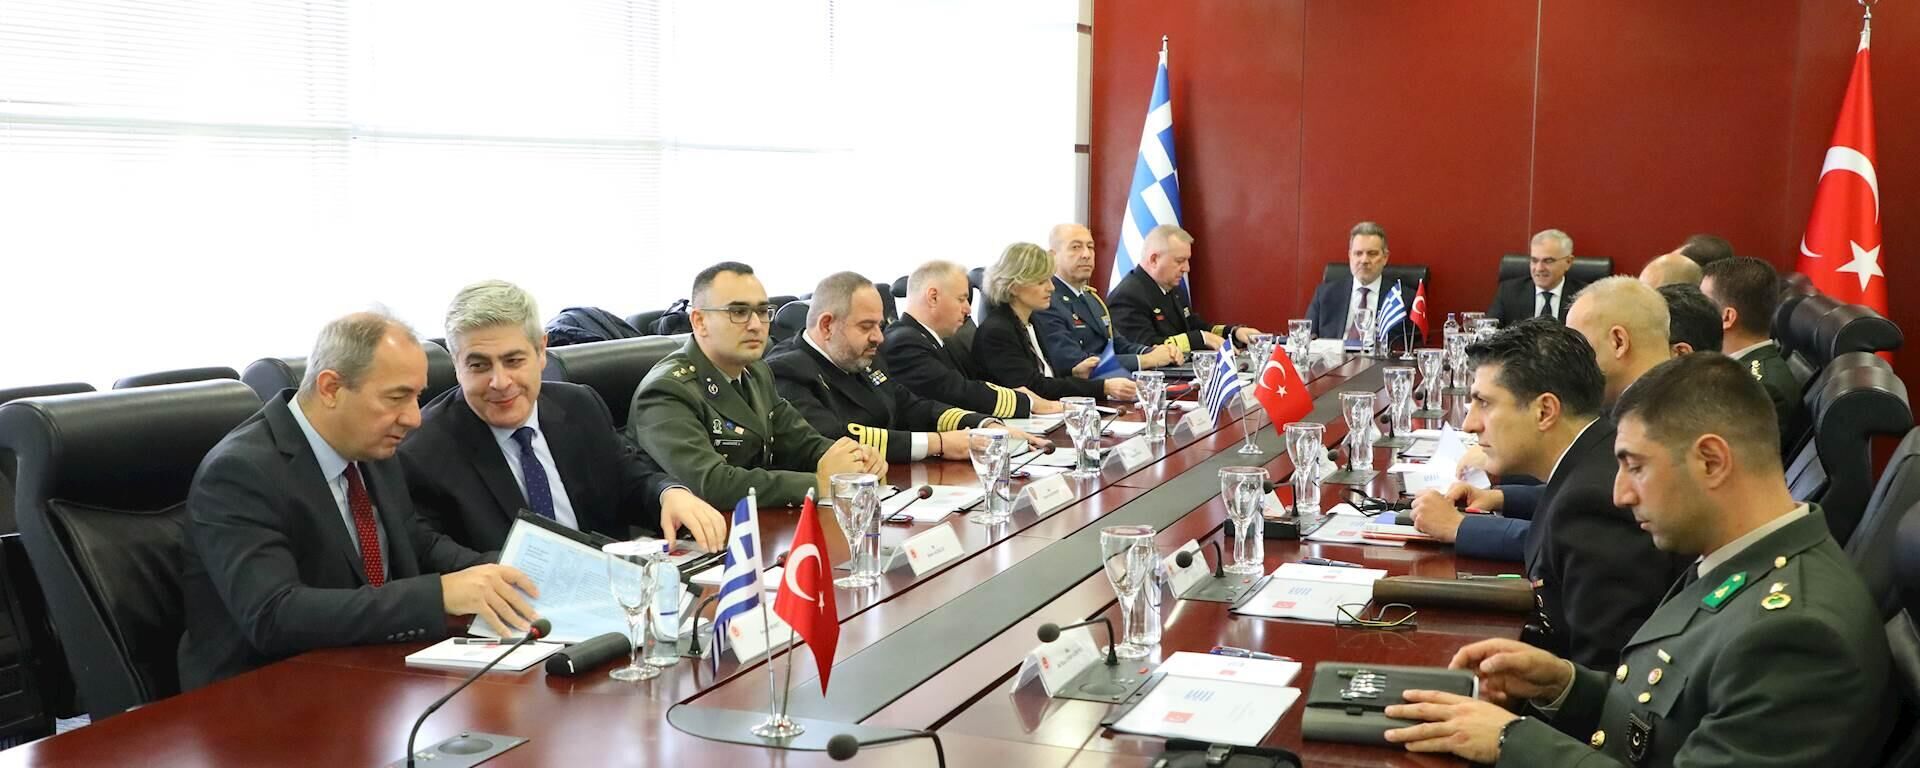 Türk ve Yunan heyetleri arasında Güven Arttırıcı Önlemler (GAÖ) toplantısının yeni turu 13 Kasım 2023 tarihinde gerçekleşmiştir. Toplantı Ankara’da Türkiye Cumhuriyeti Millî Savunma Bakanlığı ev sahipliğinde yapıldı. - Sputnik Türkiye, 1920, 13.11.2023